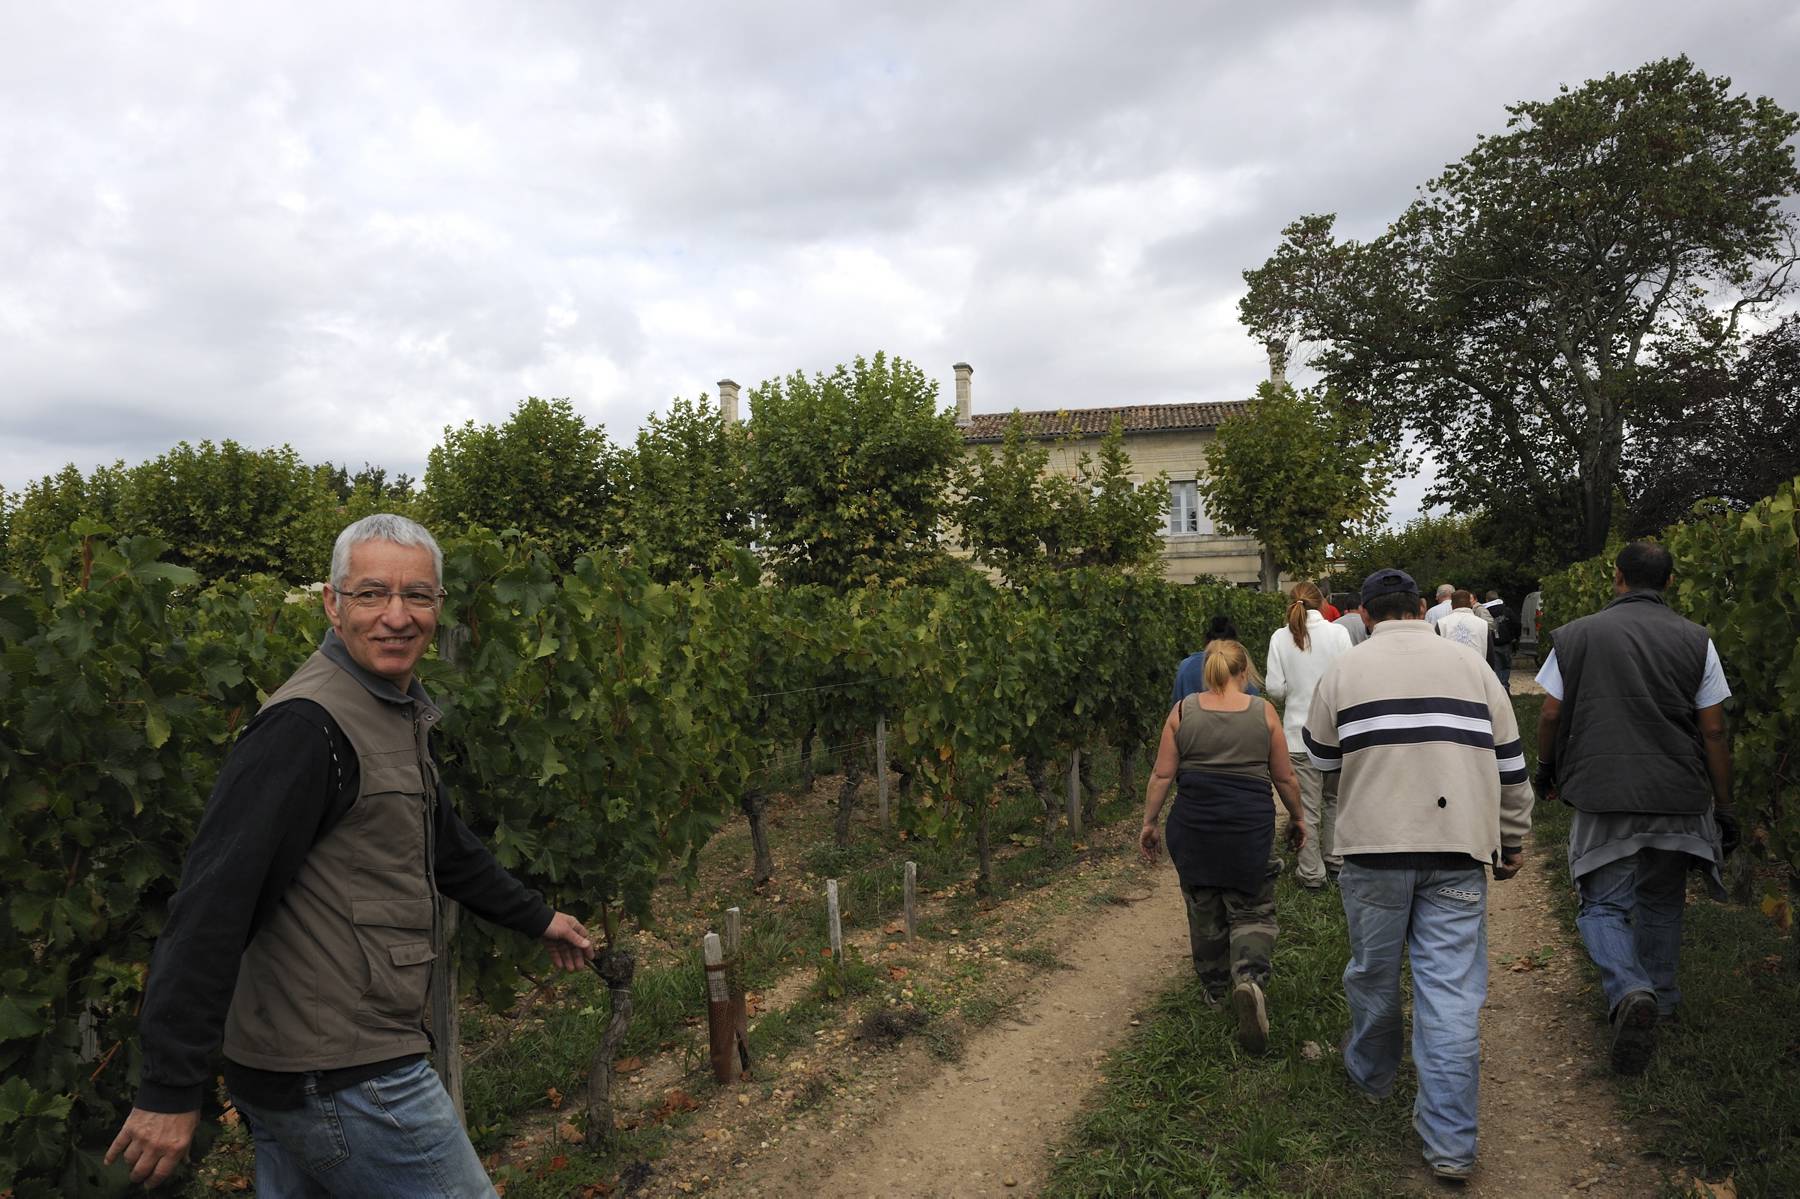 2010 Vieux Chateau Certan Harvest Produces 30% Less Wine!